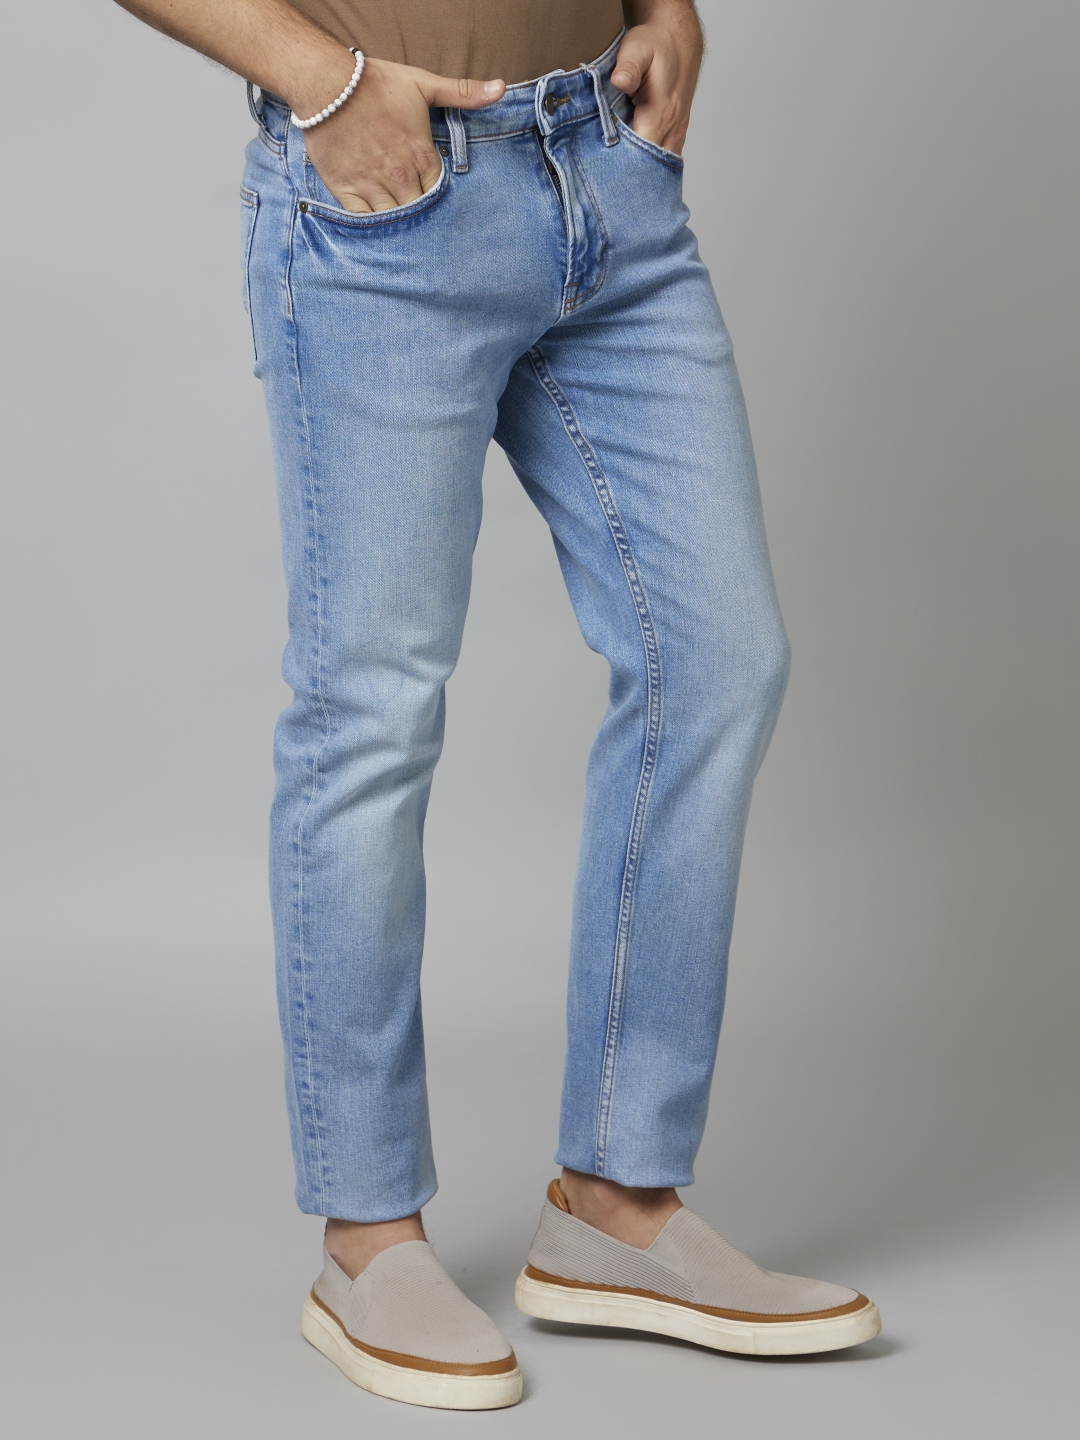 Men's Blue Cotton Blend Solid Regular Jeans